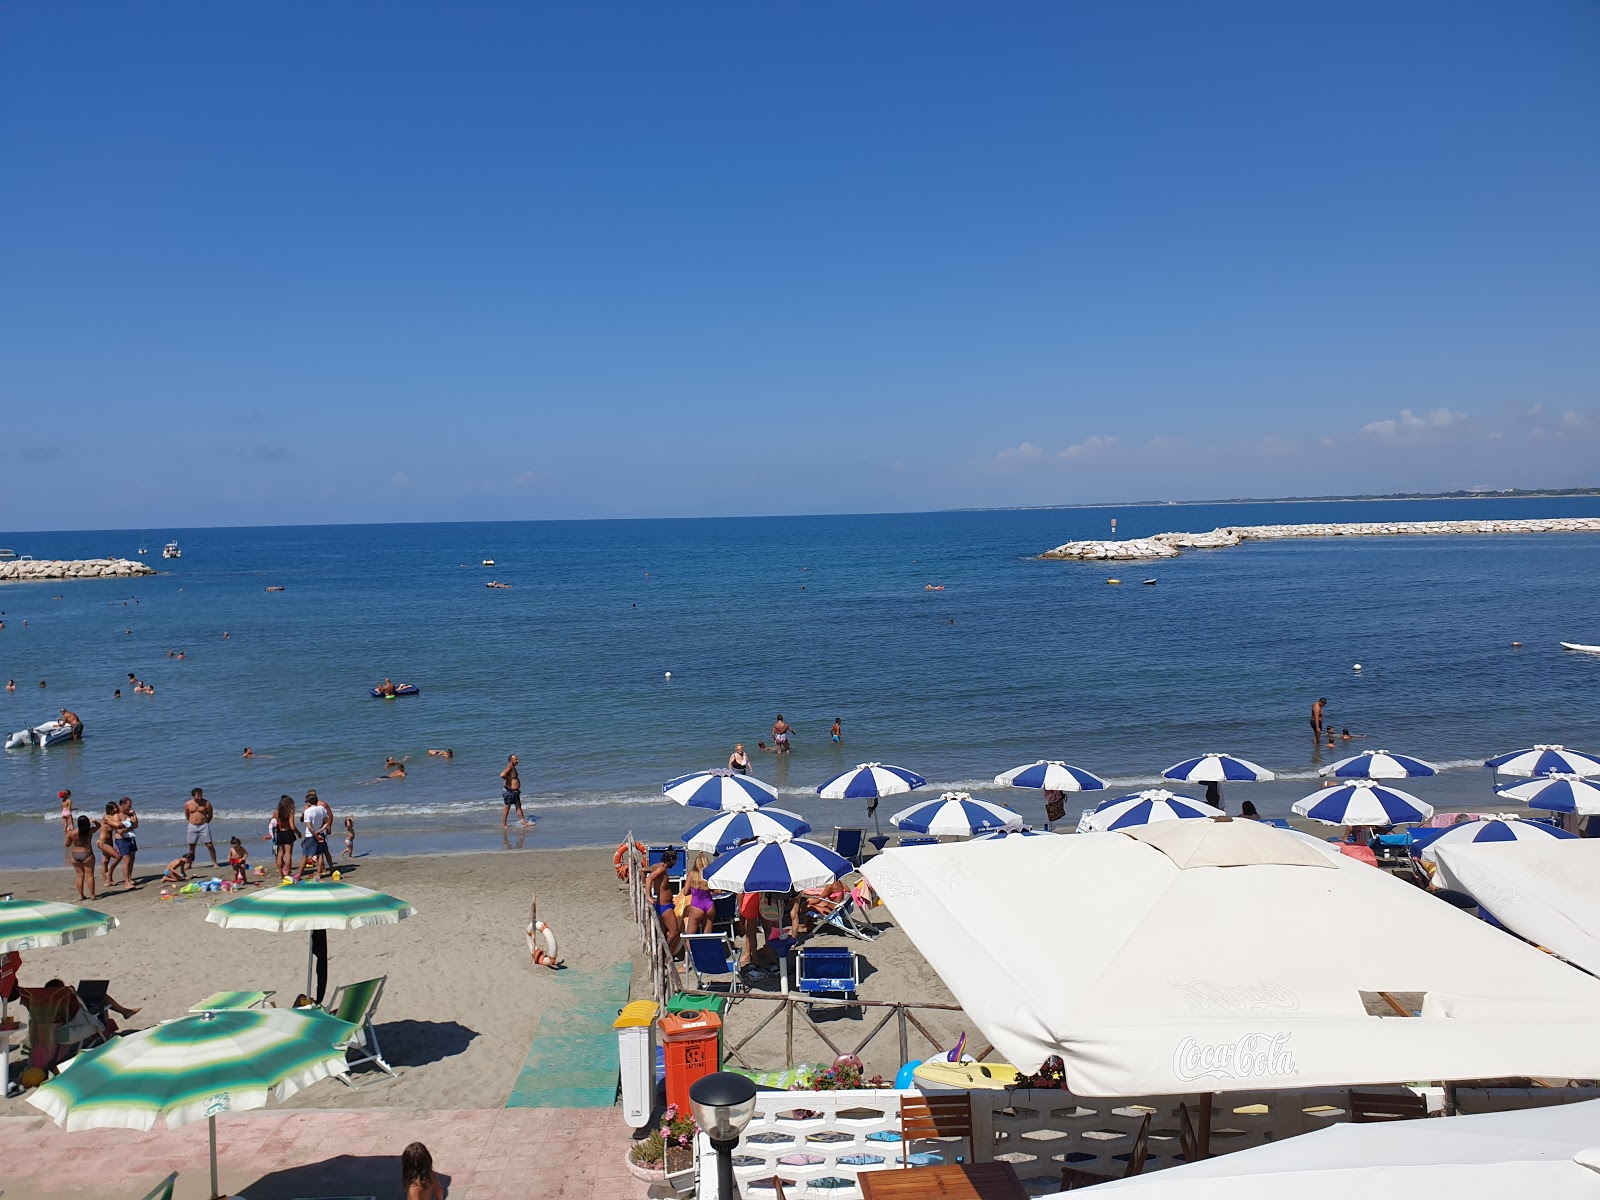 Agropoli beach'in fotoğrafı çok temiz temizlik seviyesi ile